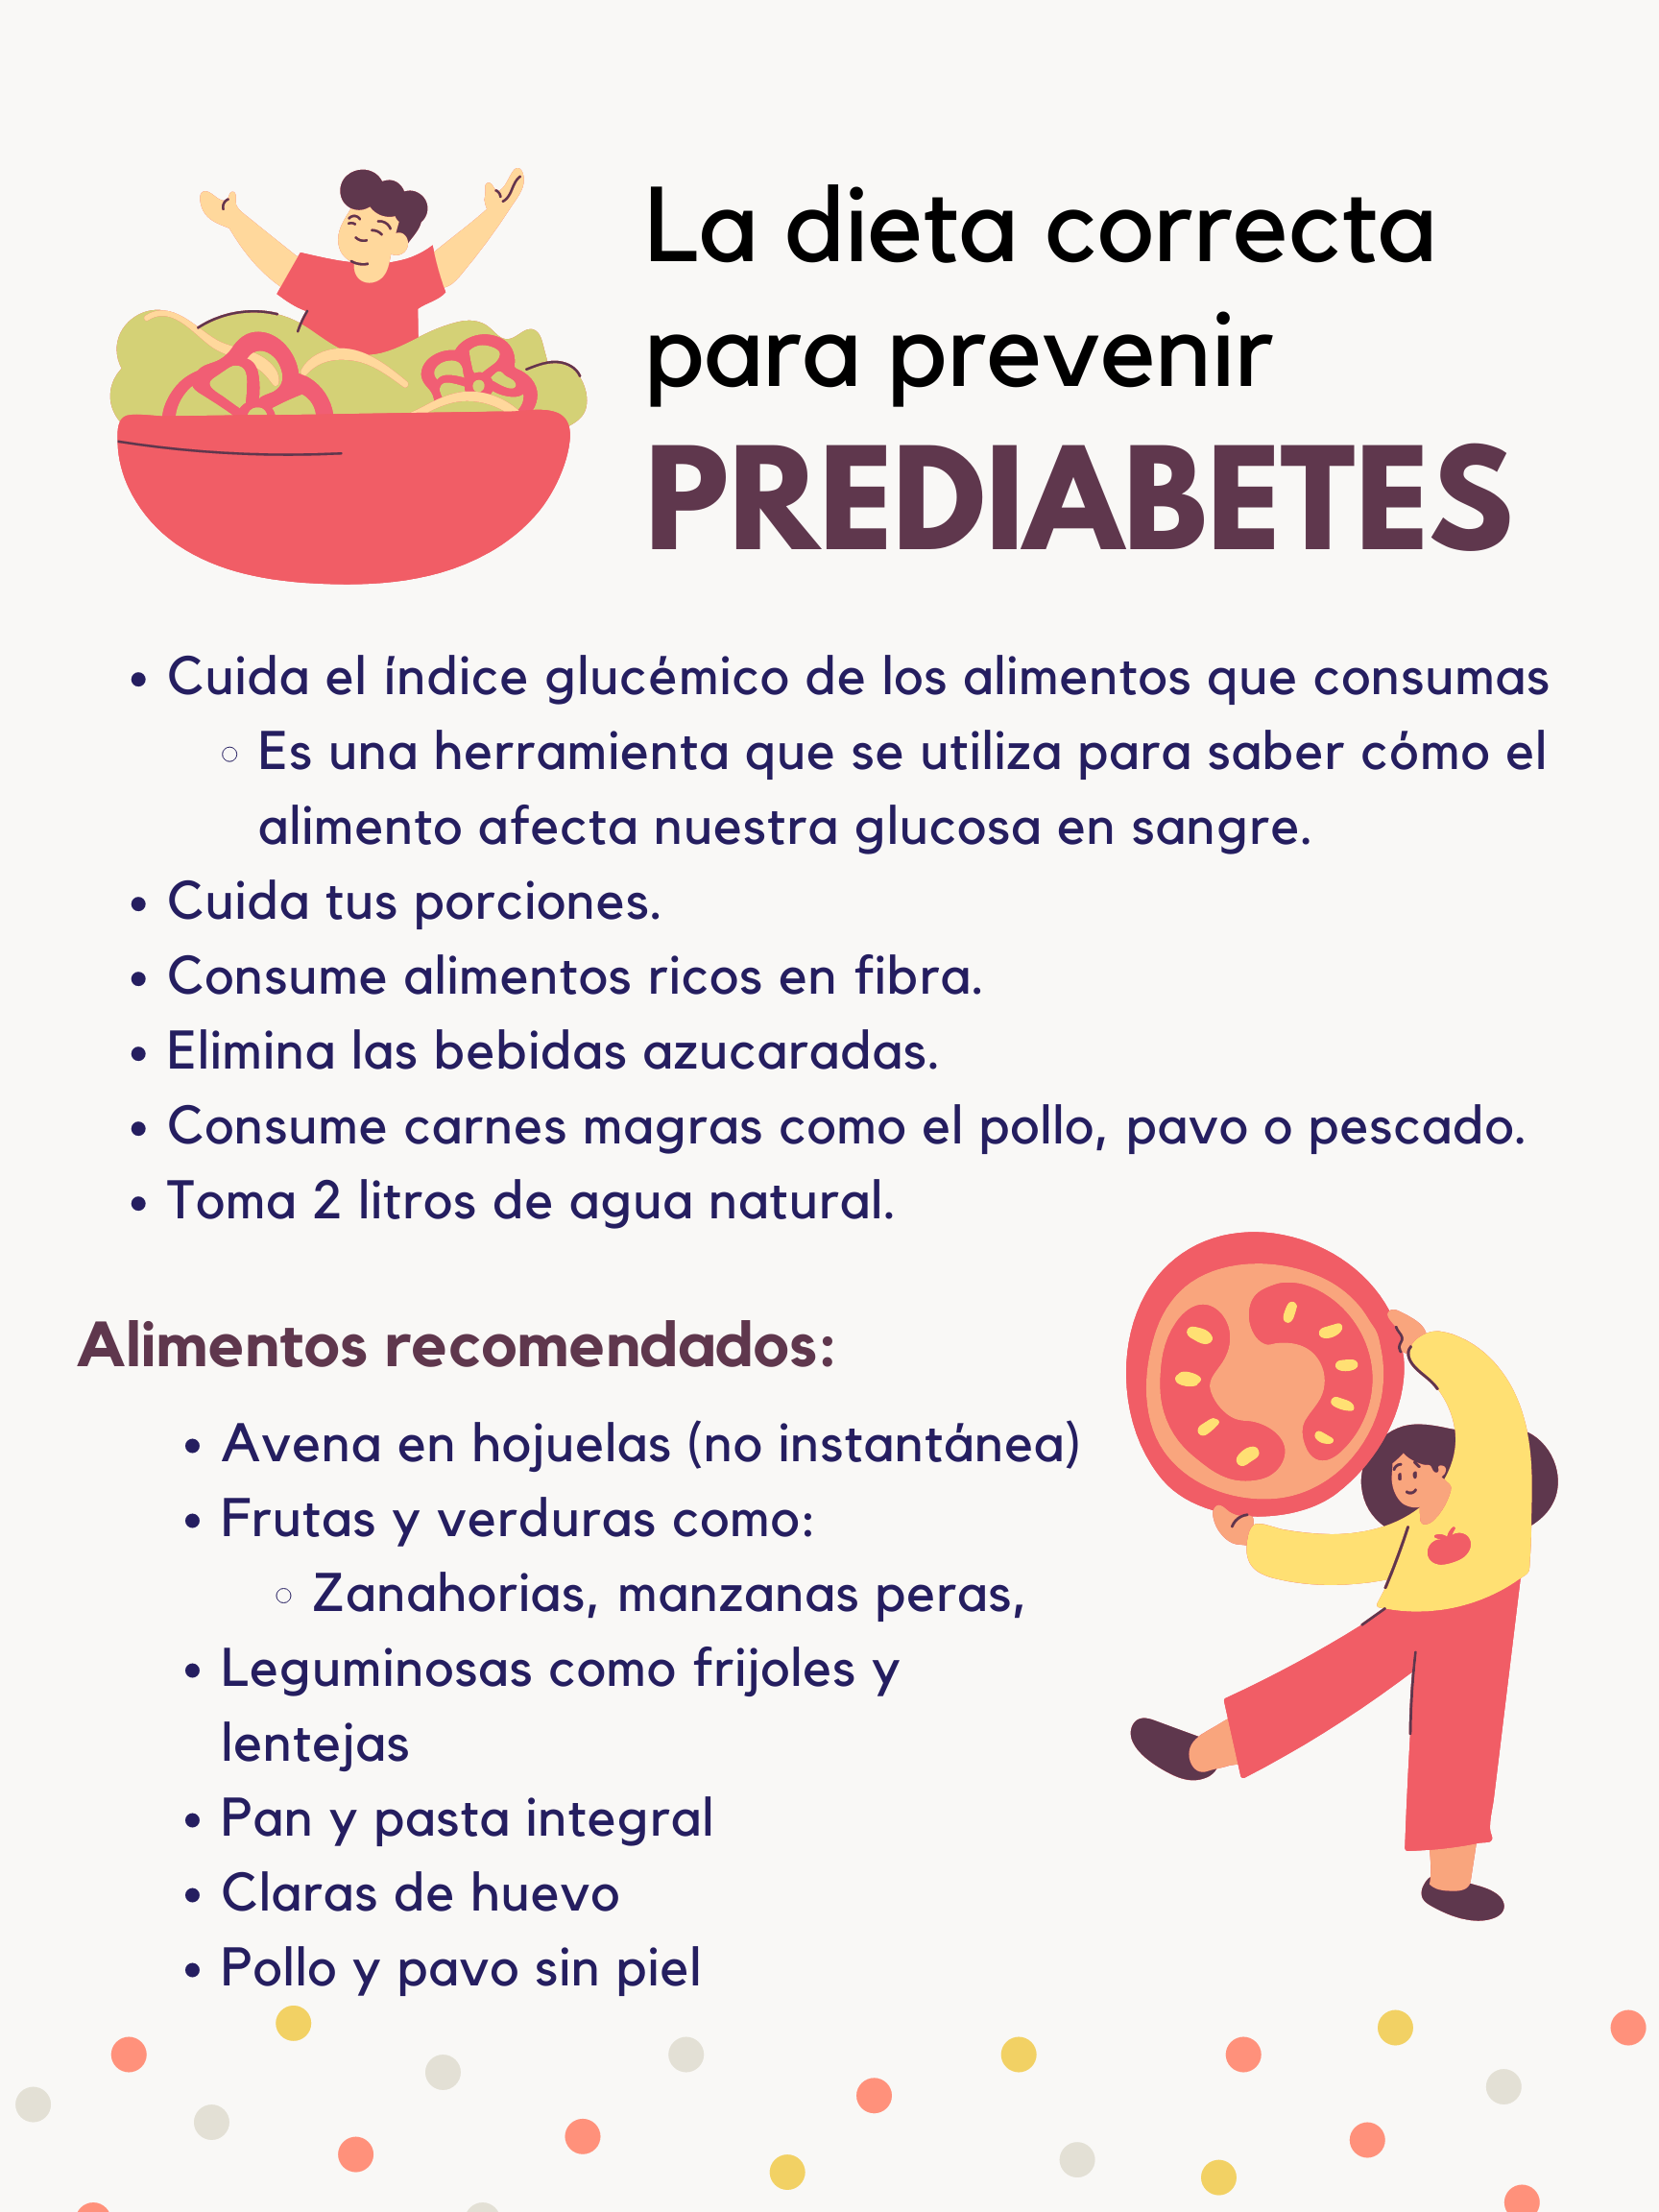 La Dieta Correcta Para Prevenir Prediabetes Alimentación Y Salud